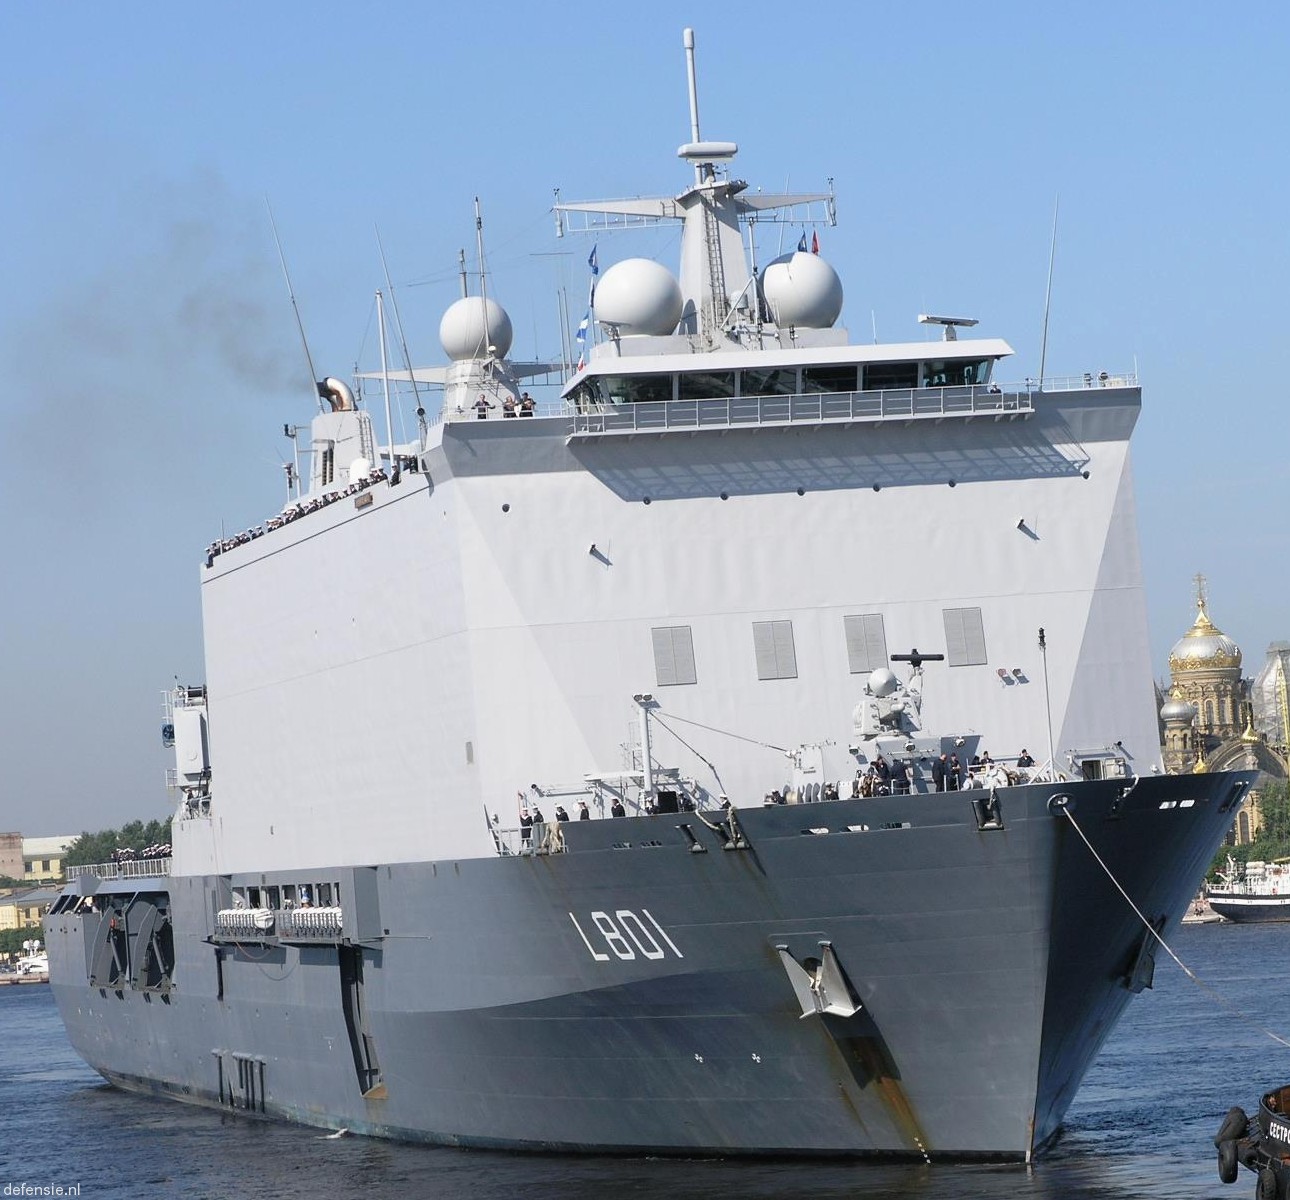 l-801 hnlms johan de witt amphibious ship landing platform dock lpd royal netherlands navy 41